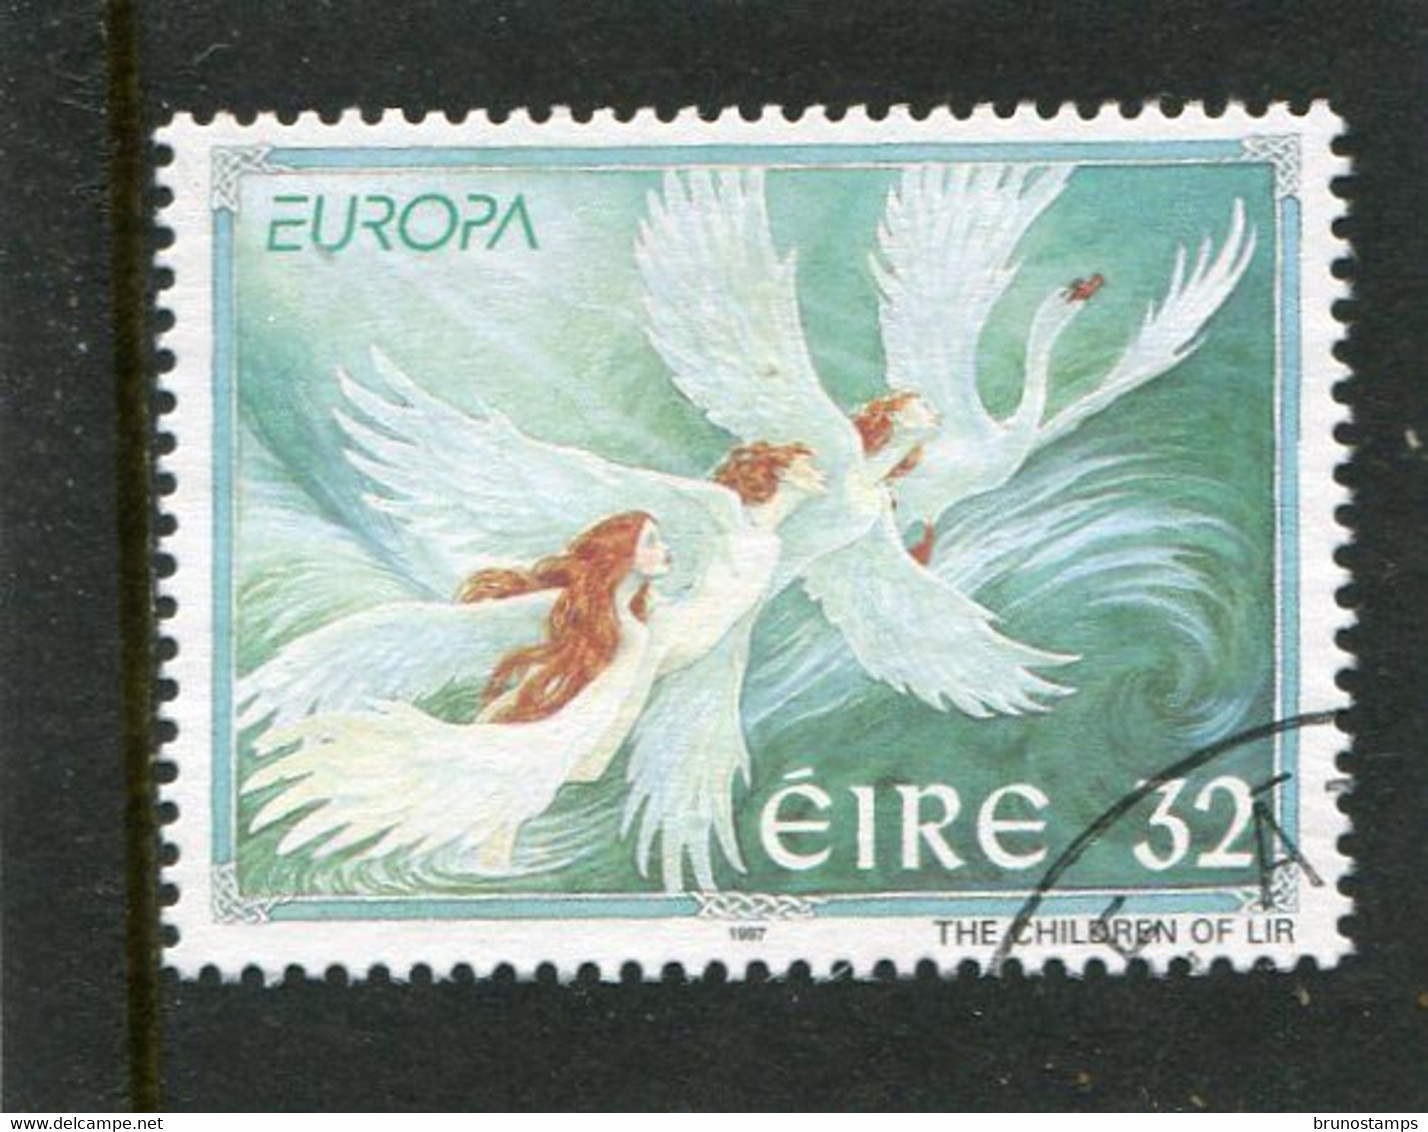 IRELAND/EIRE - 1997  32p  EUROPA  FINE USED - Usados